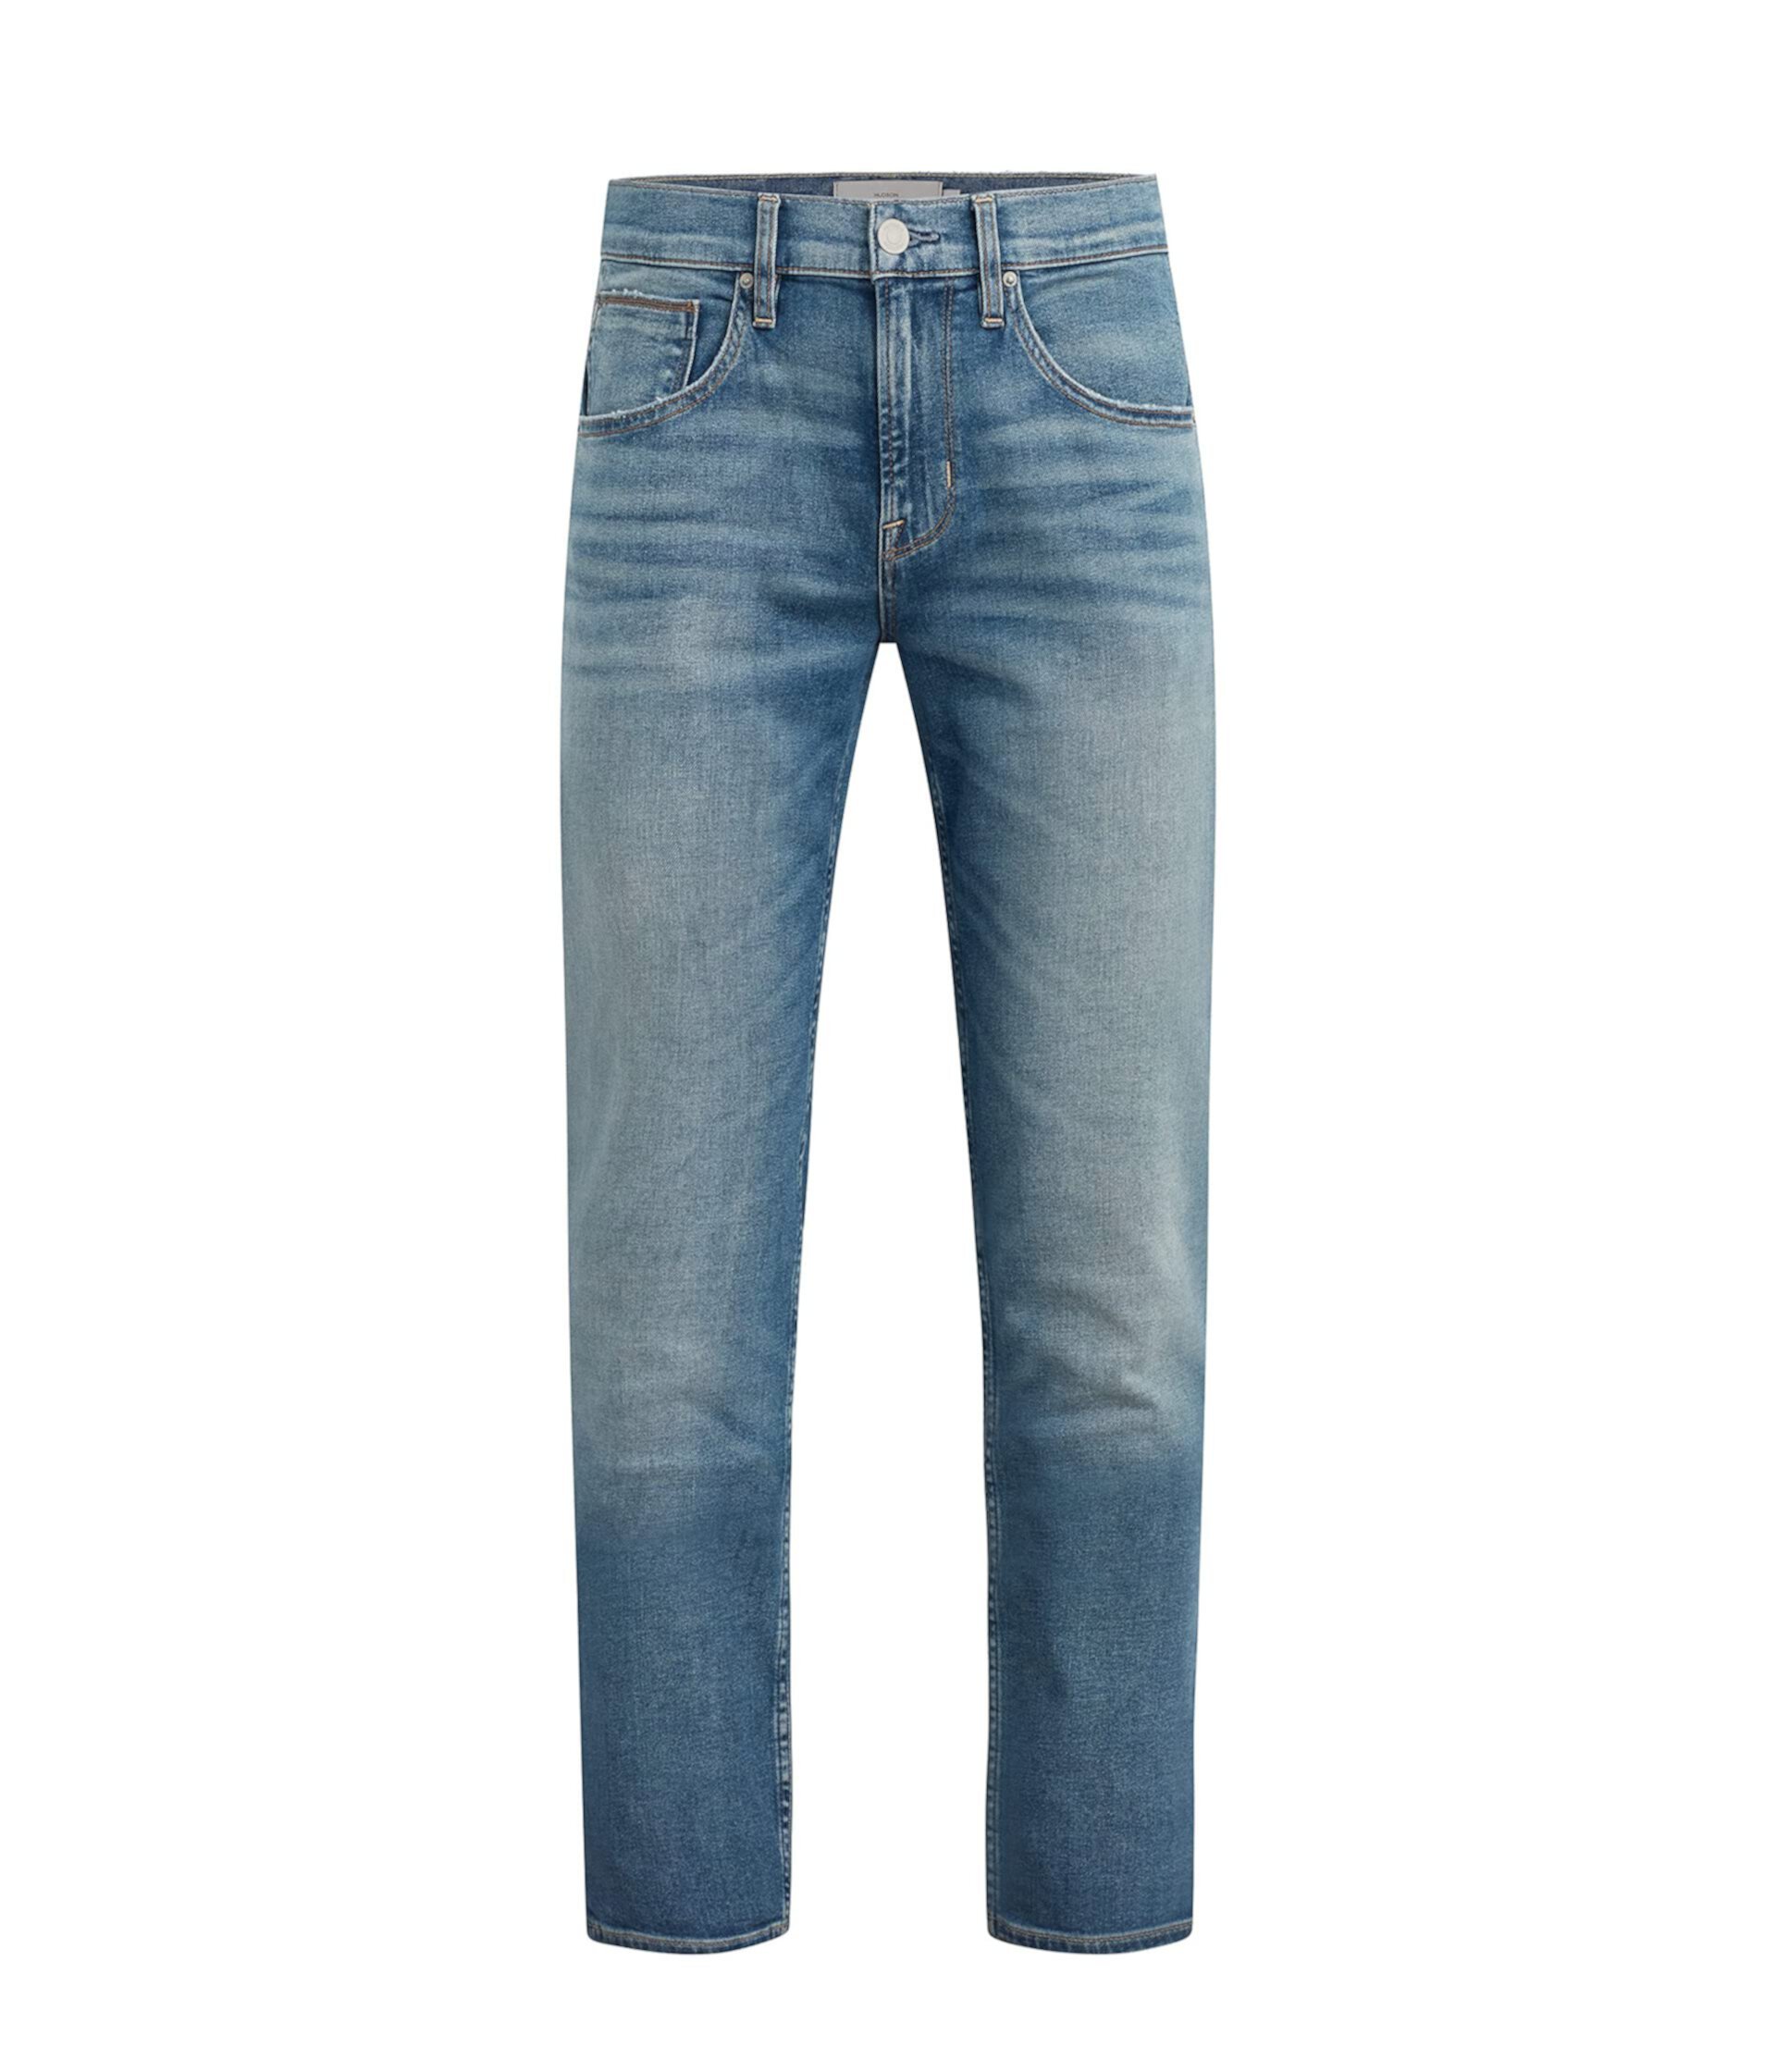 Прямые джинсы Byron в Bayview от Hudson Jeans для мужчин Hudson Jeans